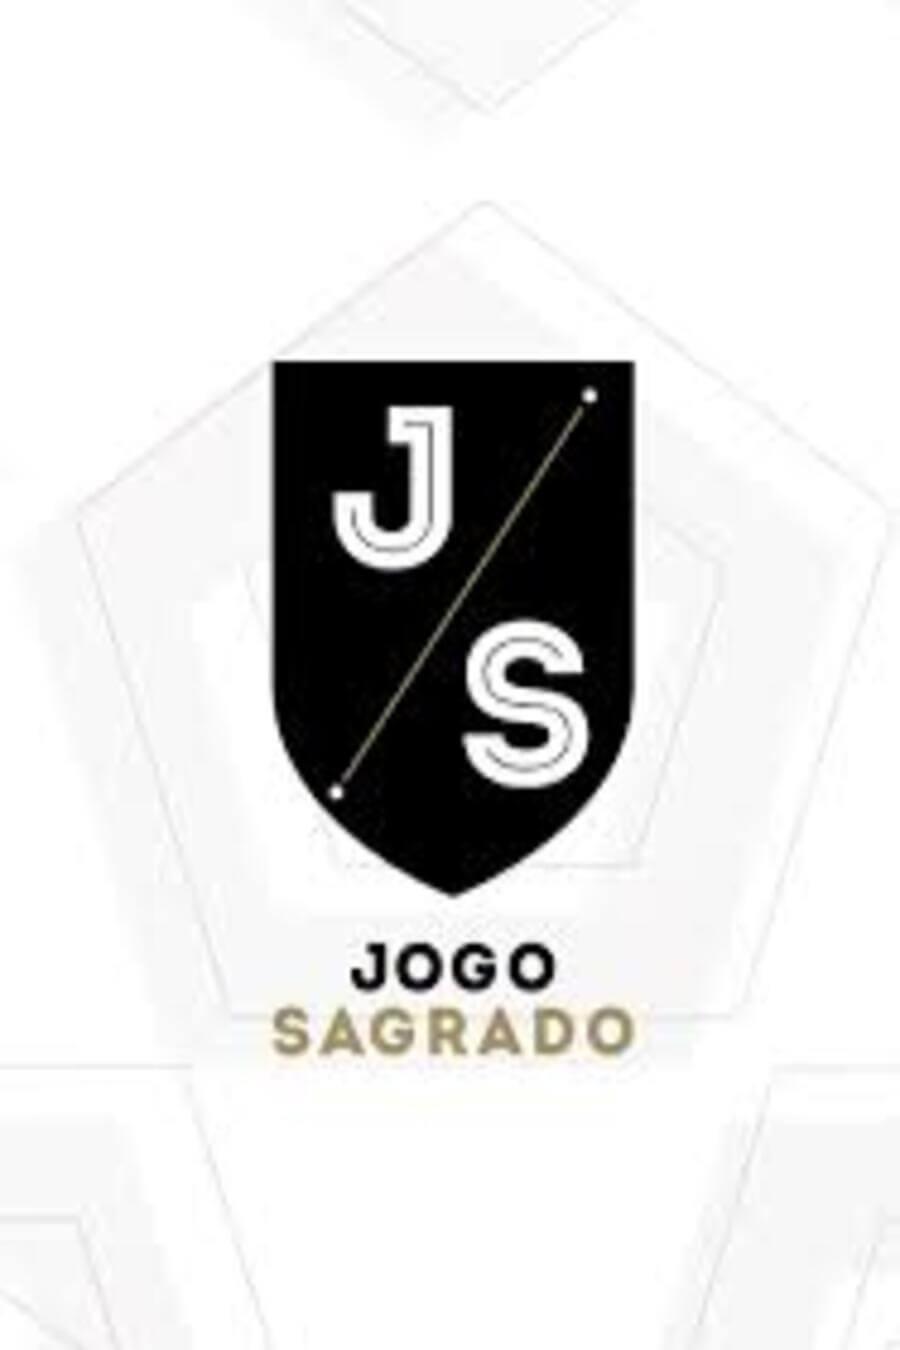 TV ratings for Jogo Sagrado in France. Fox Sports Brasil TV series